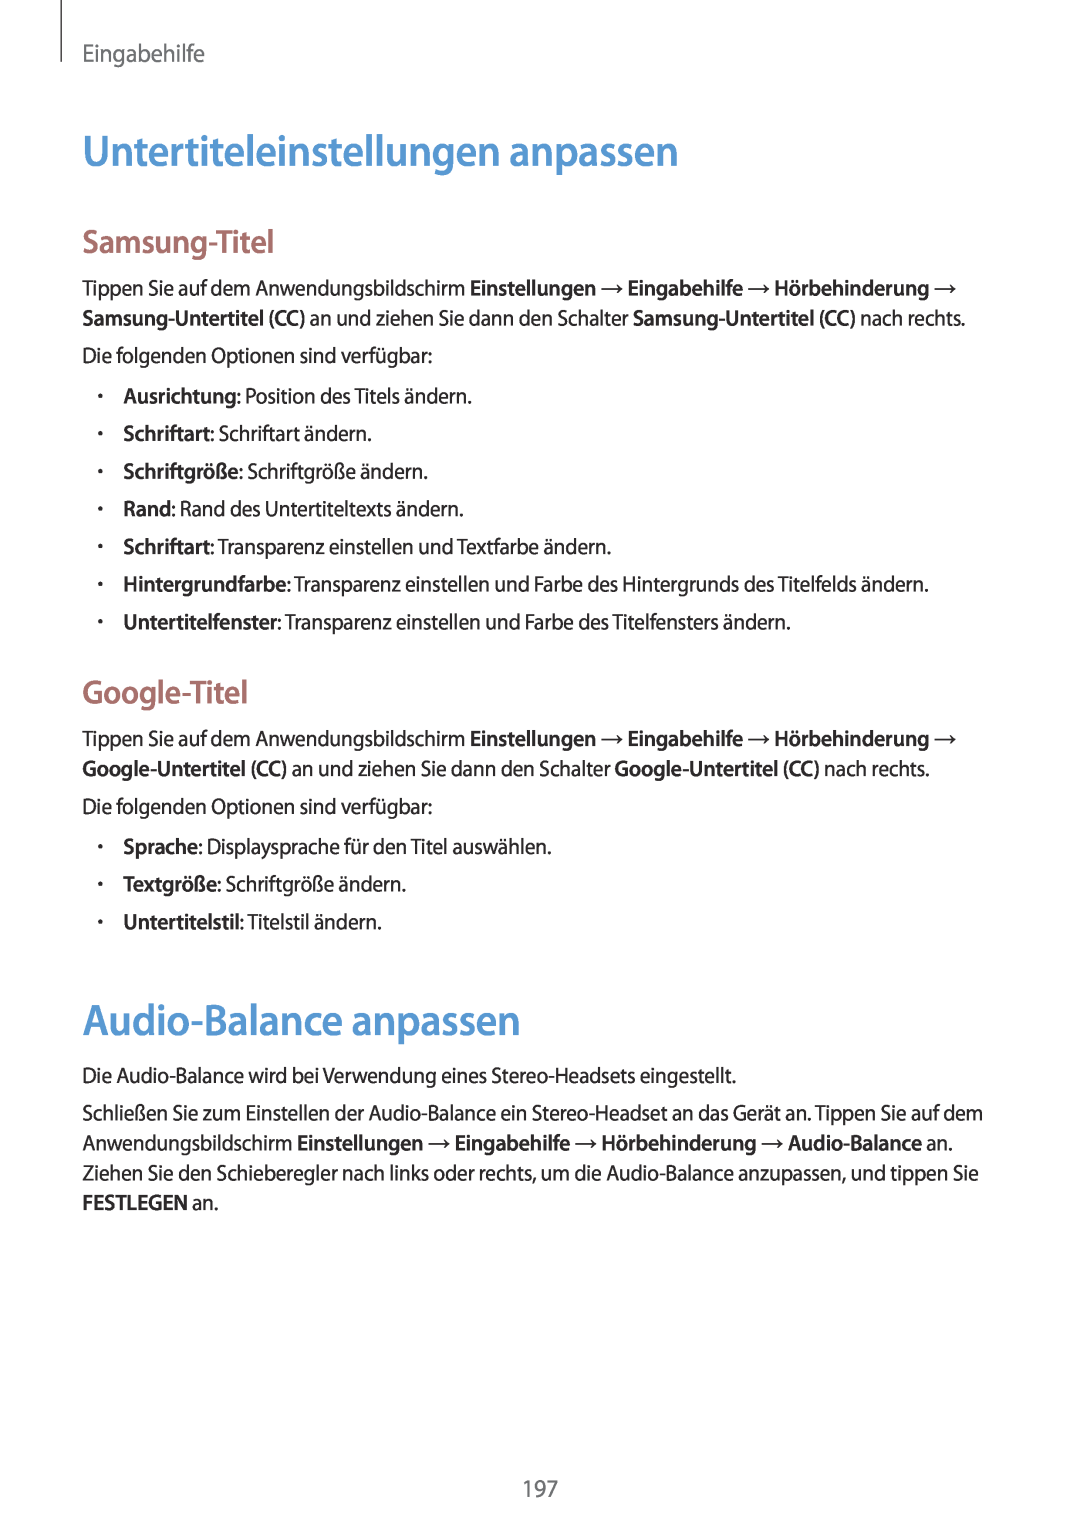 Samsung SM-G901FZKADBT Untertiteleinstellungen anpassen, Audio-Balance anpassen, Samsung-Titel, Google-Titel, Eingabehilfe 